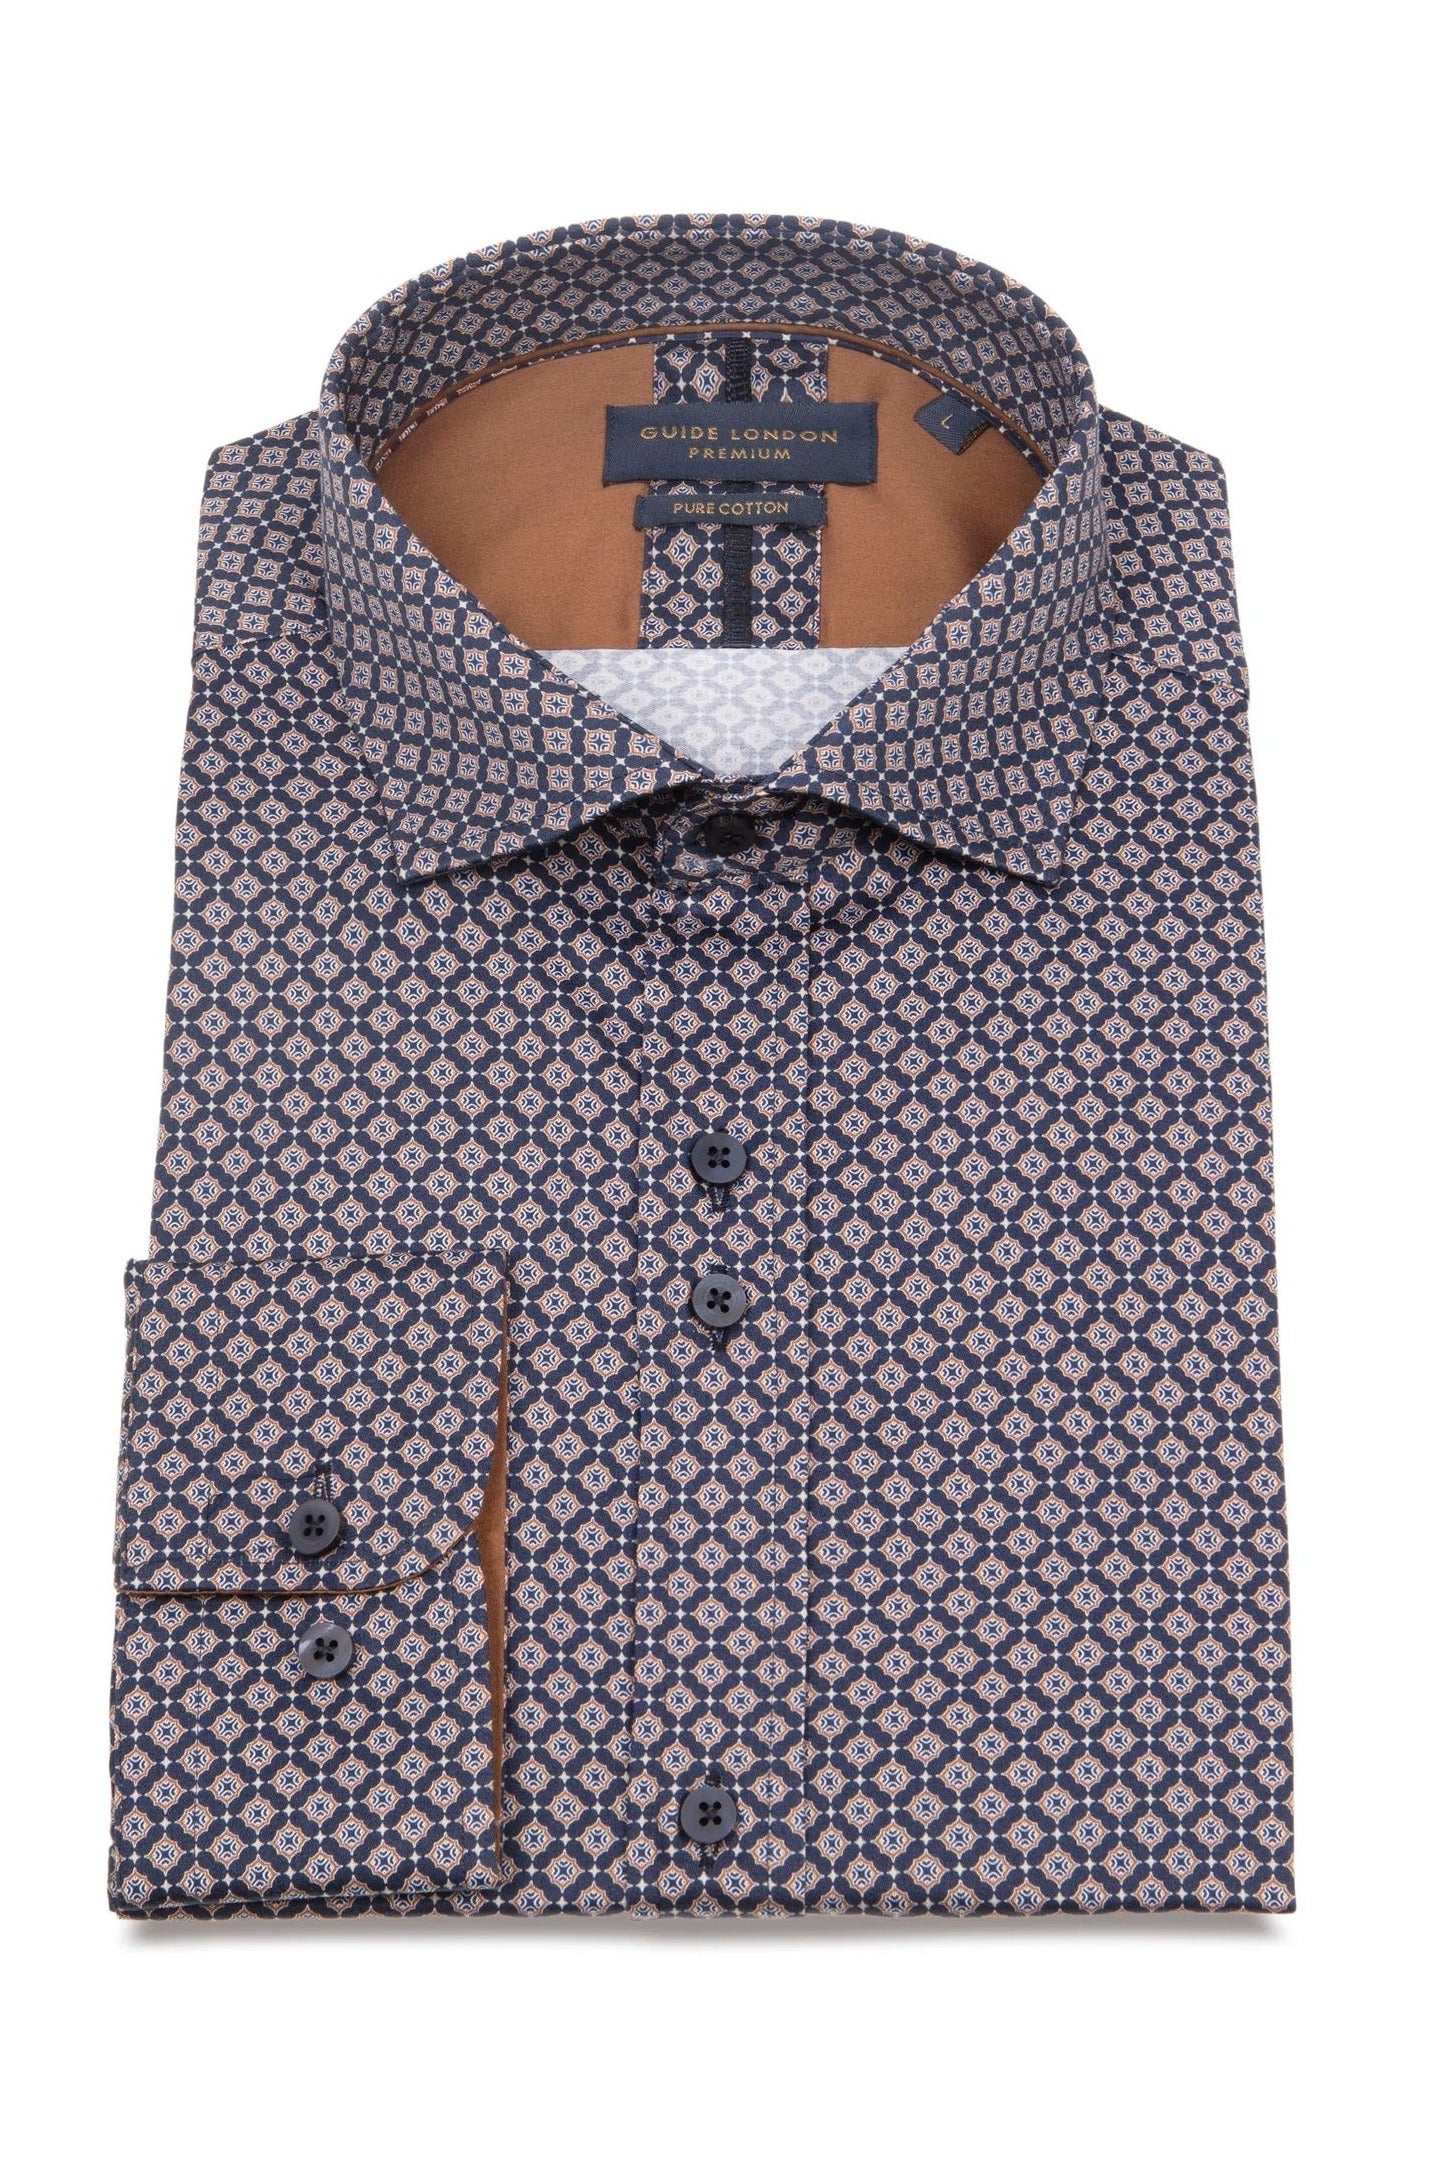 Guide London Geometric Pattern Long Sleeve Cotton Shirt LS76683 Navy/Tan #dr.kruger #dr kruger #drkruger